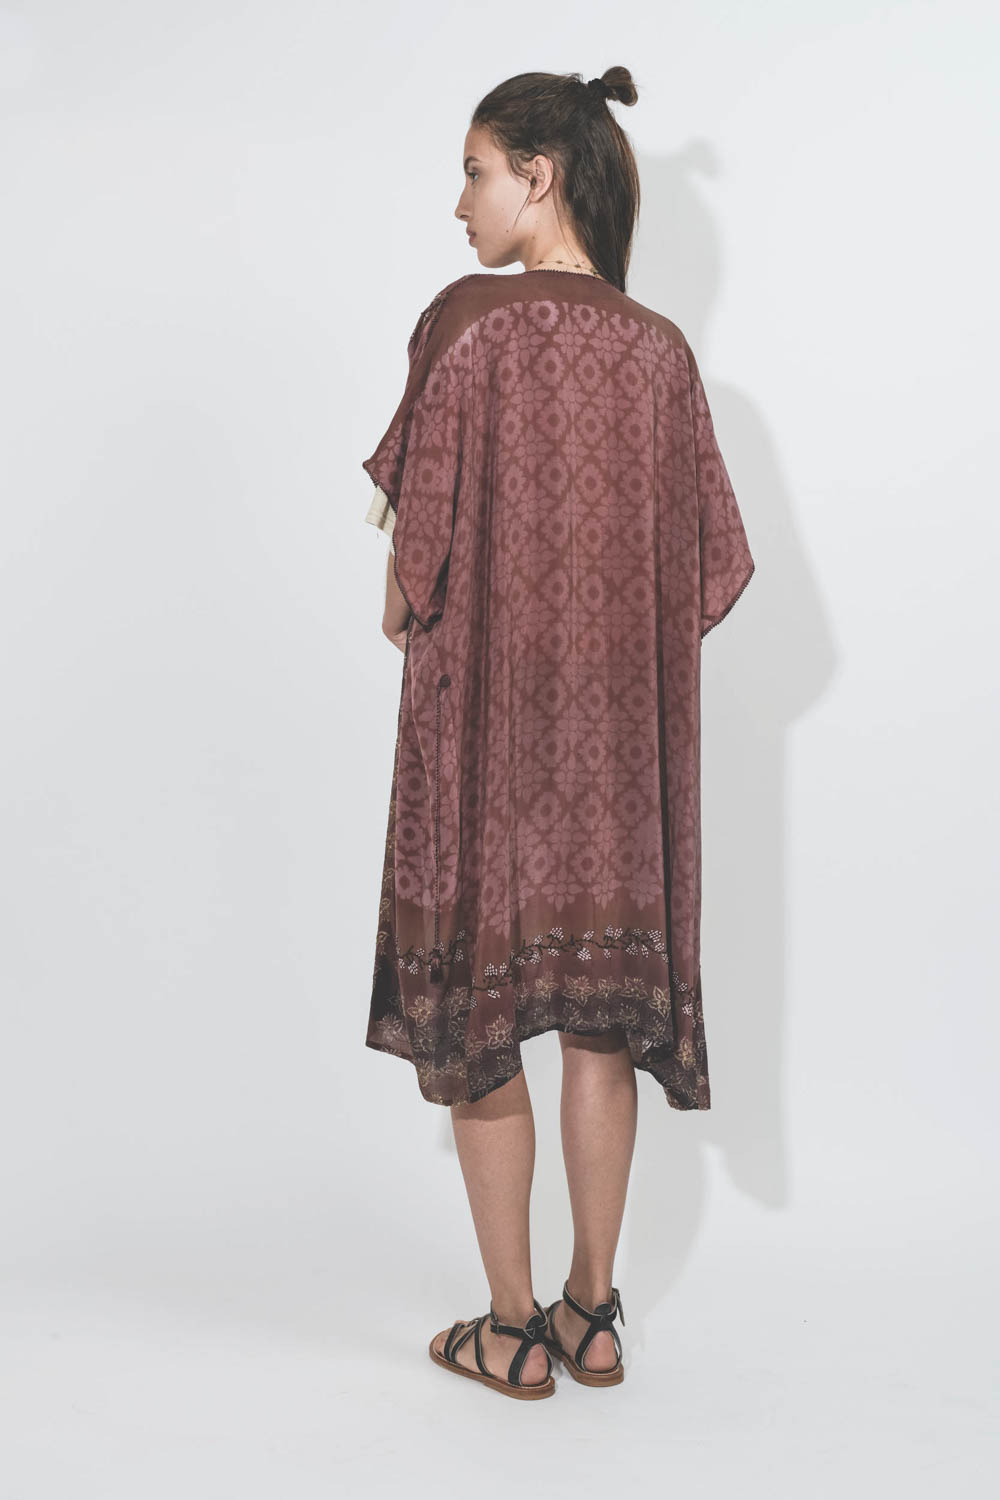 Kimono robe en soie imprimée et brodée sari vintage Hand.So.On. Pièce unique. Porté de dos.